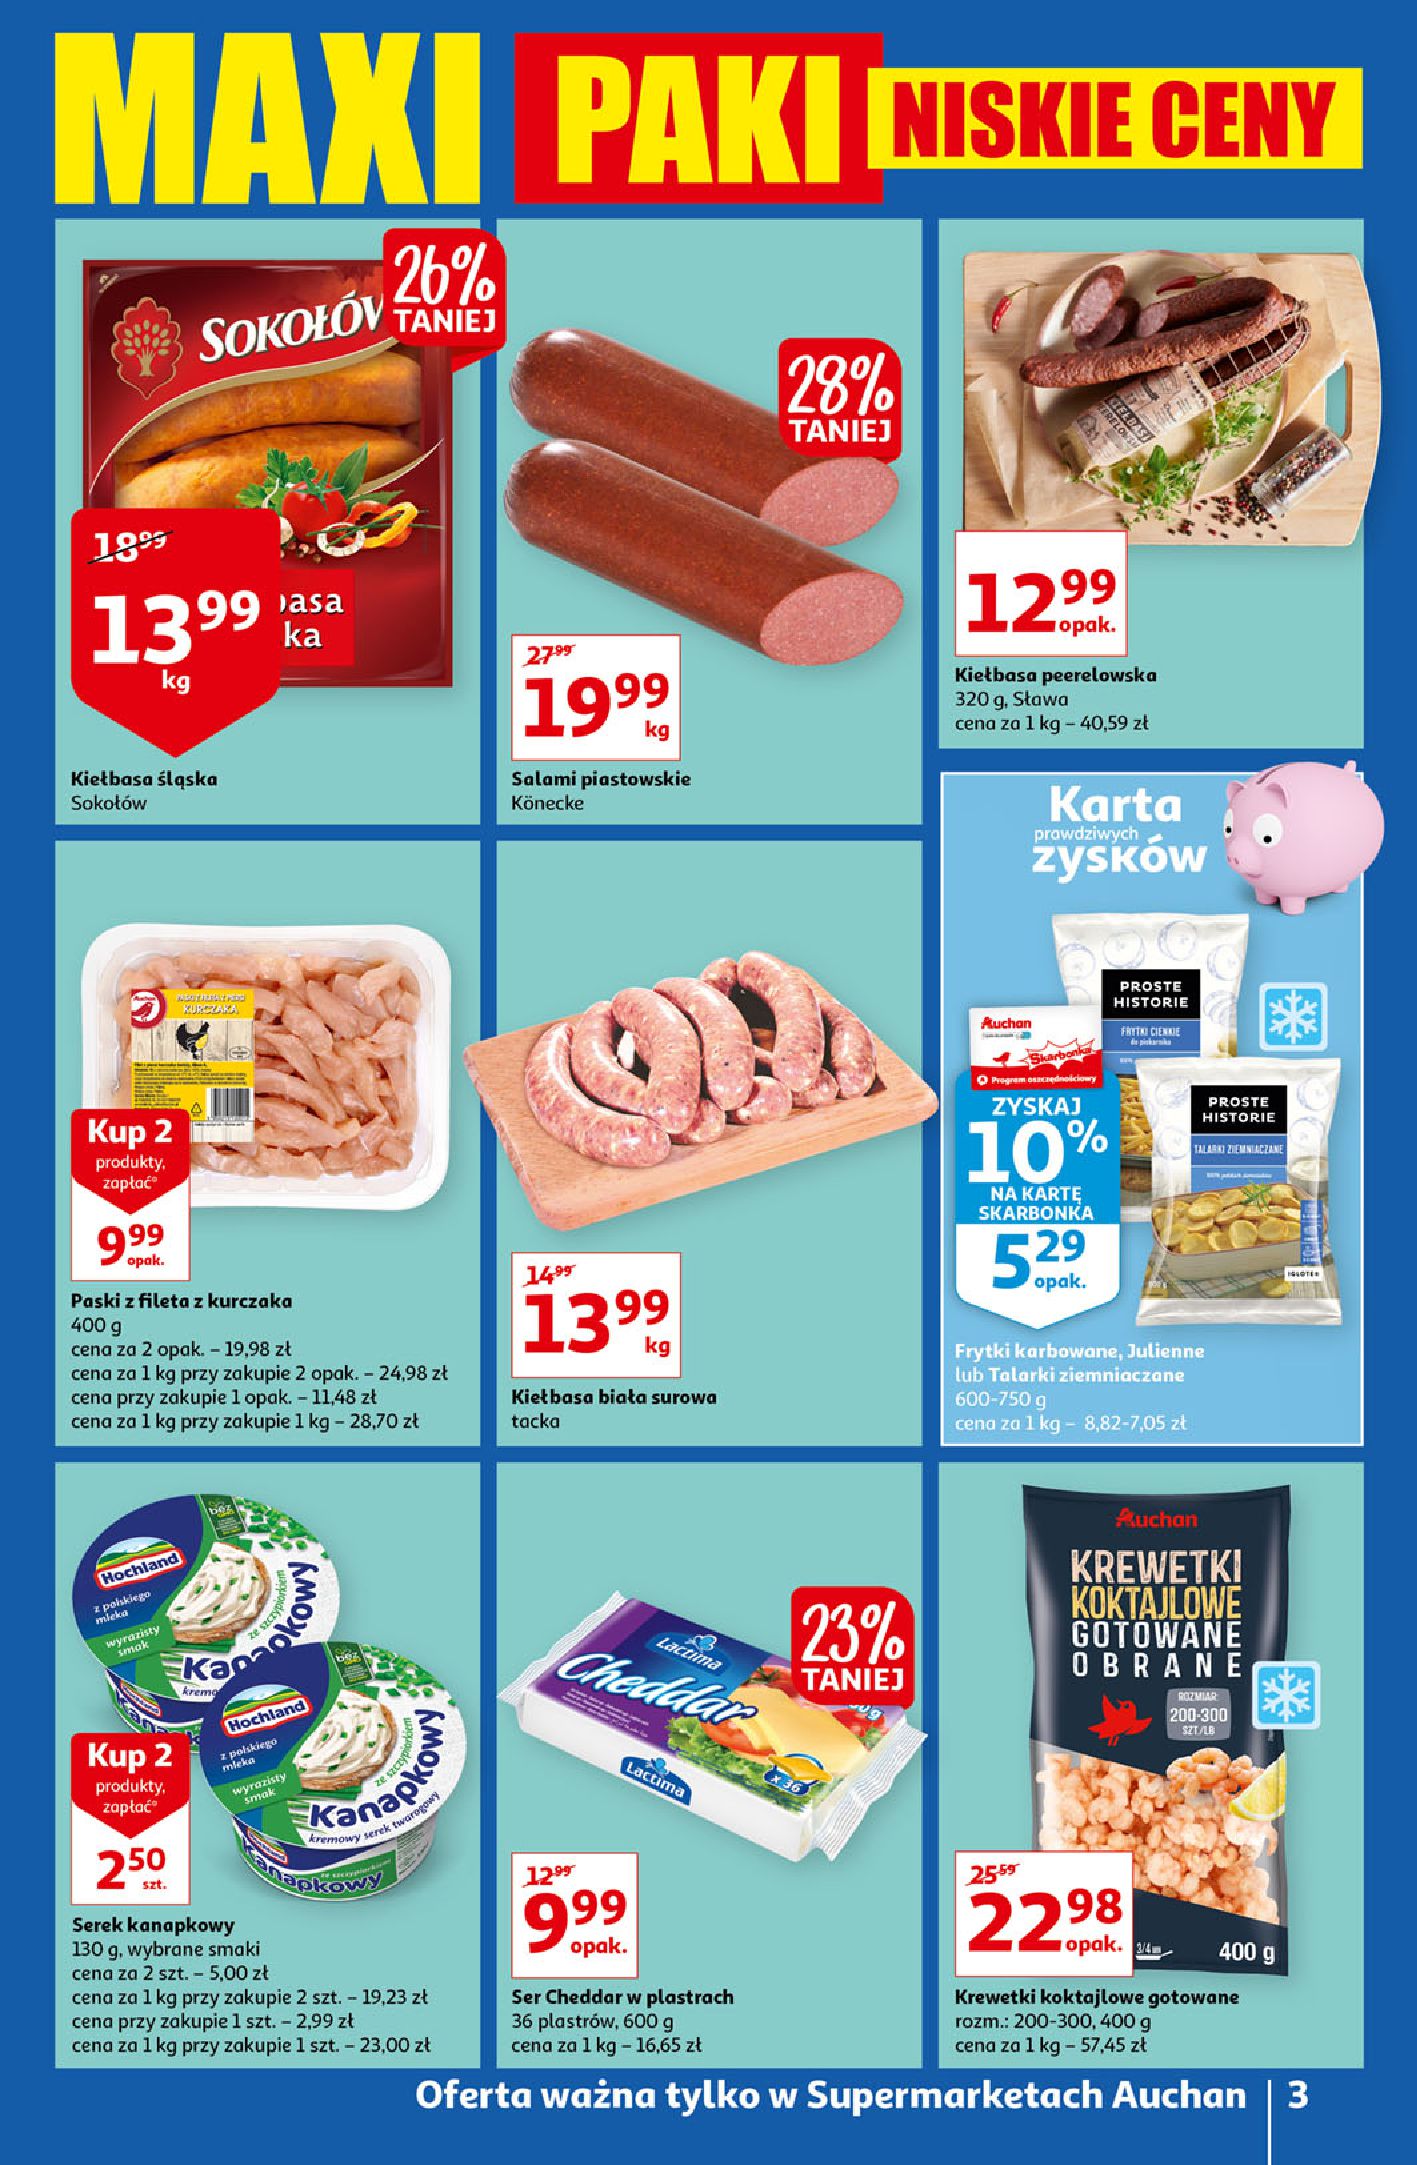 Gazetka Auchan: Gazetka Auchan - maxi paki - supermarkety 2022-01-13 page-3